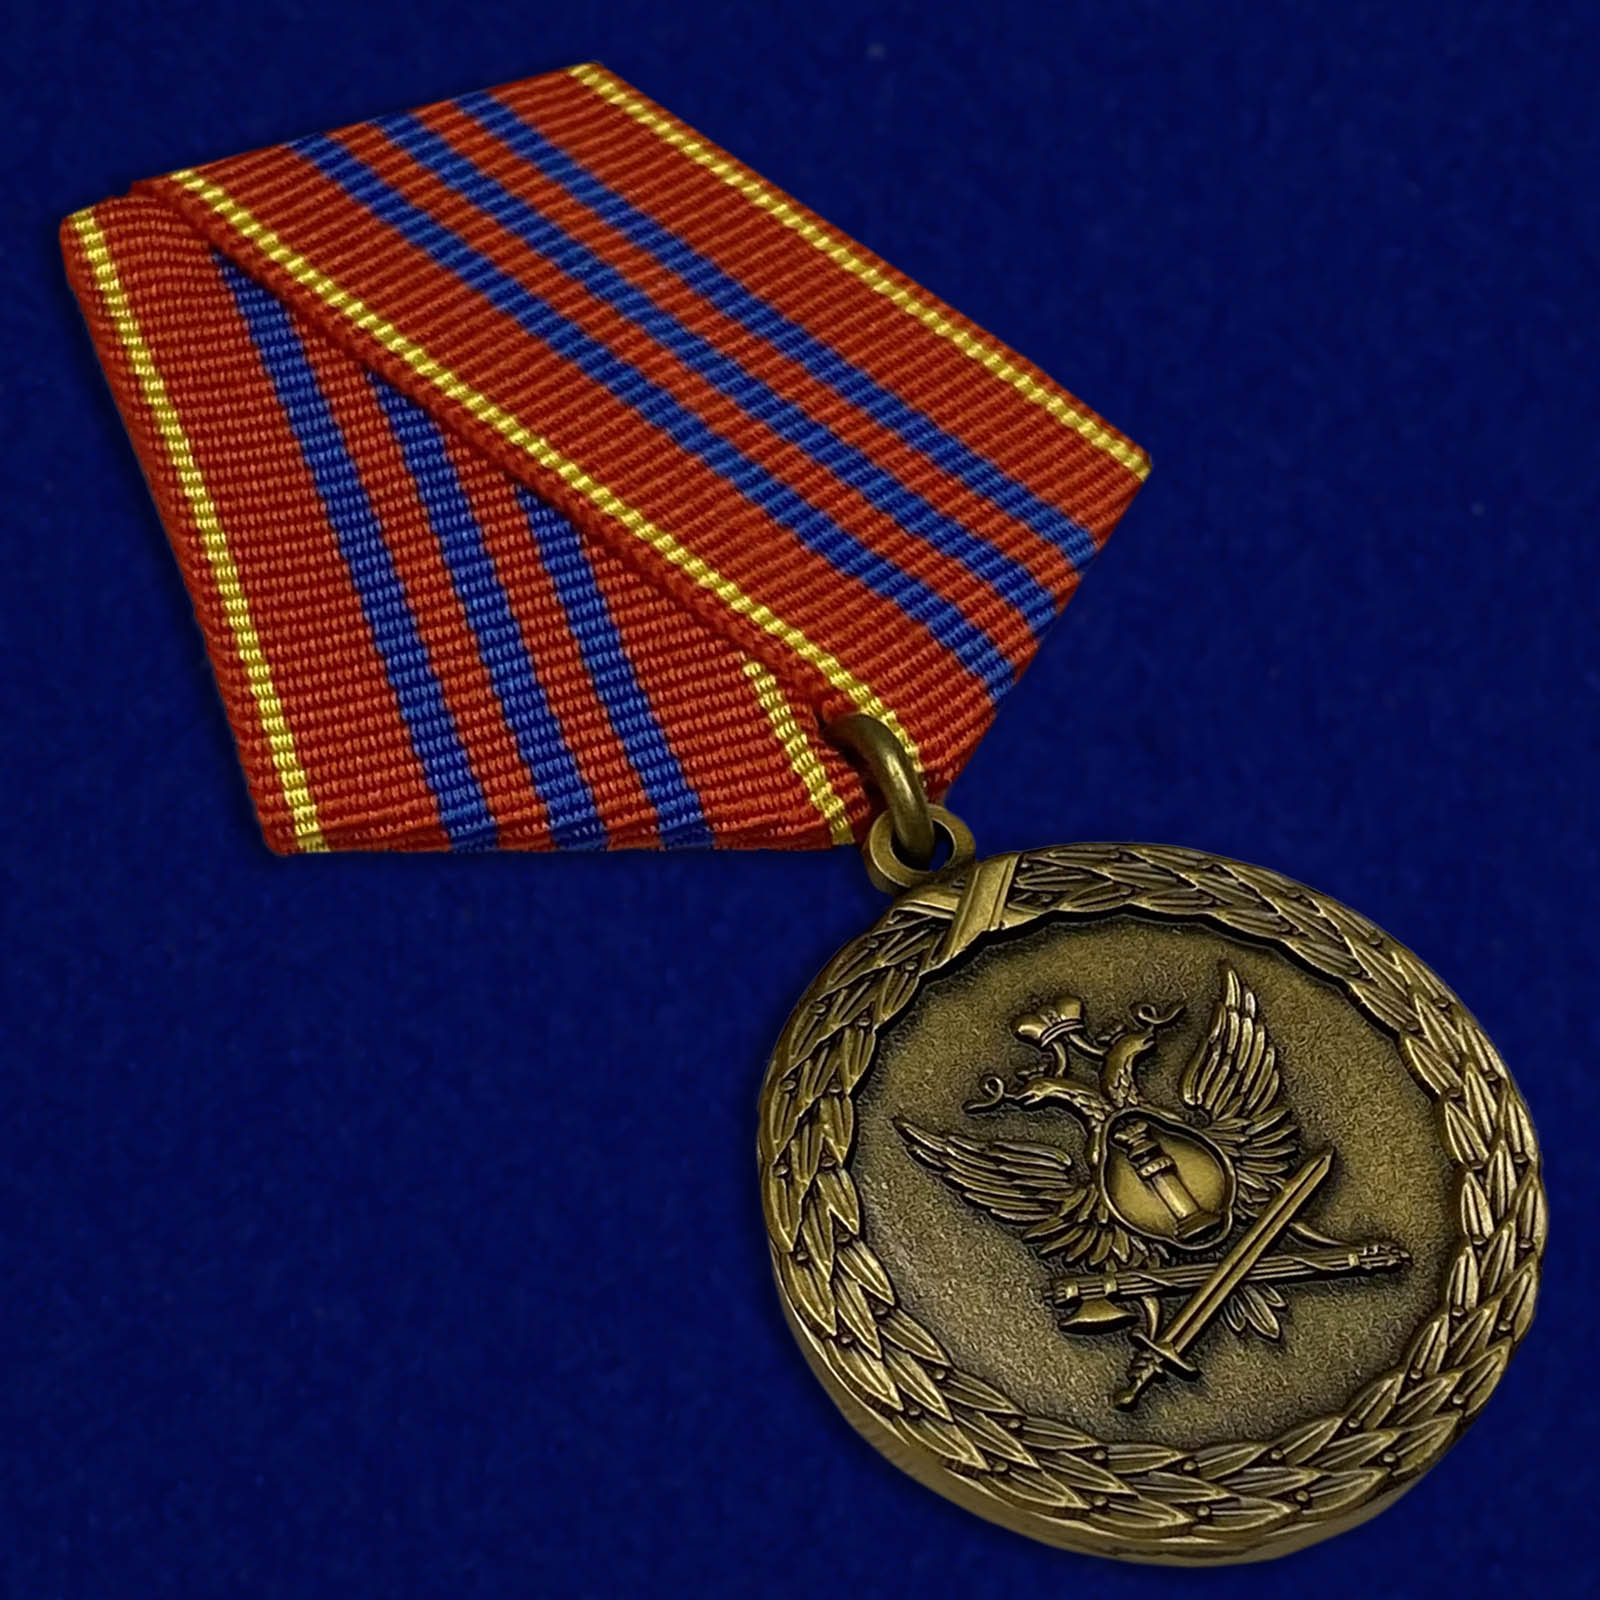 Купить медаль "За службу" 3 степени в военторге Военпро